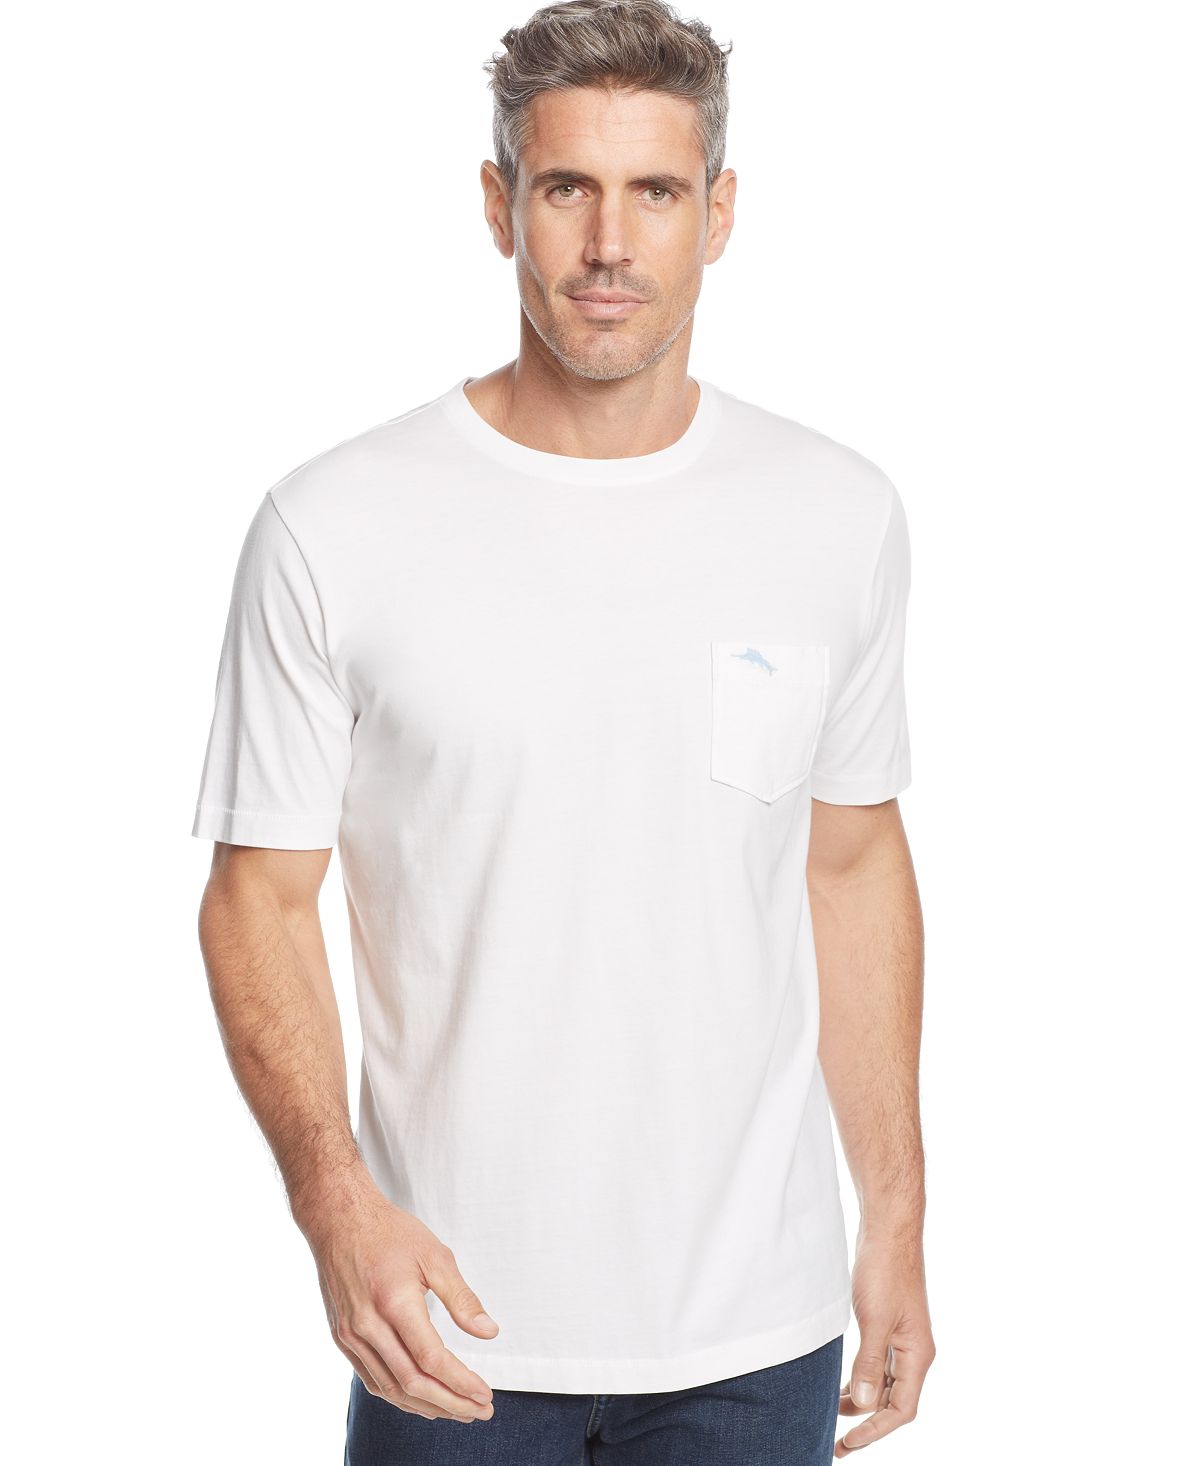 Мужская футболка bali sky с круглым вырезом и короткими рукавами Tommy Bahama, белый куртка casa grande tommy bahama цвет bbq